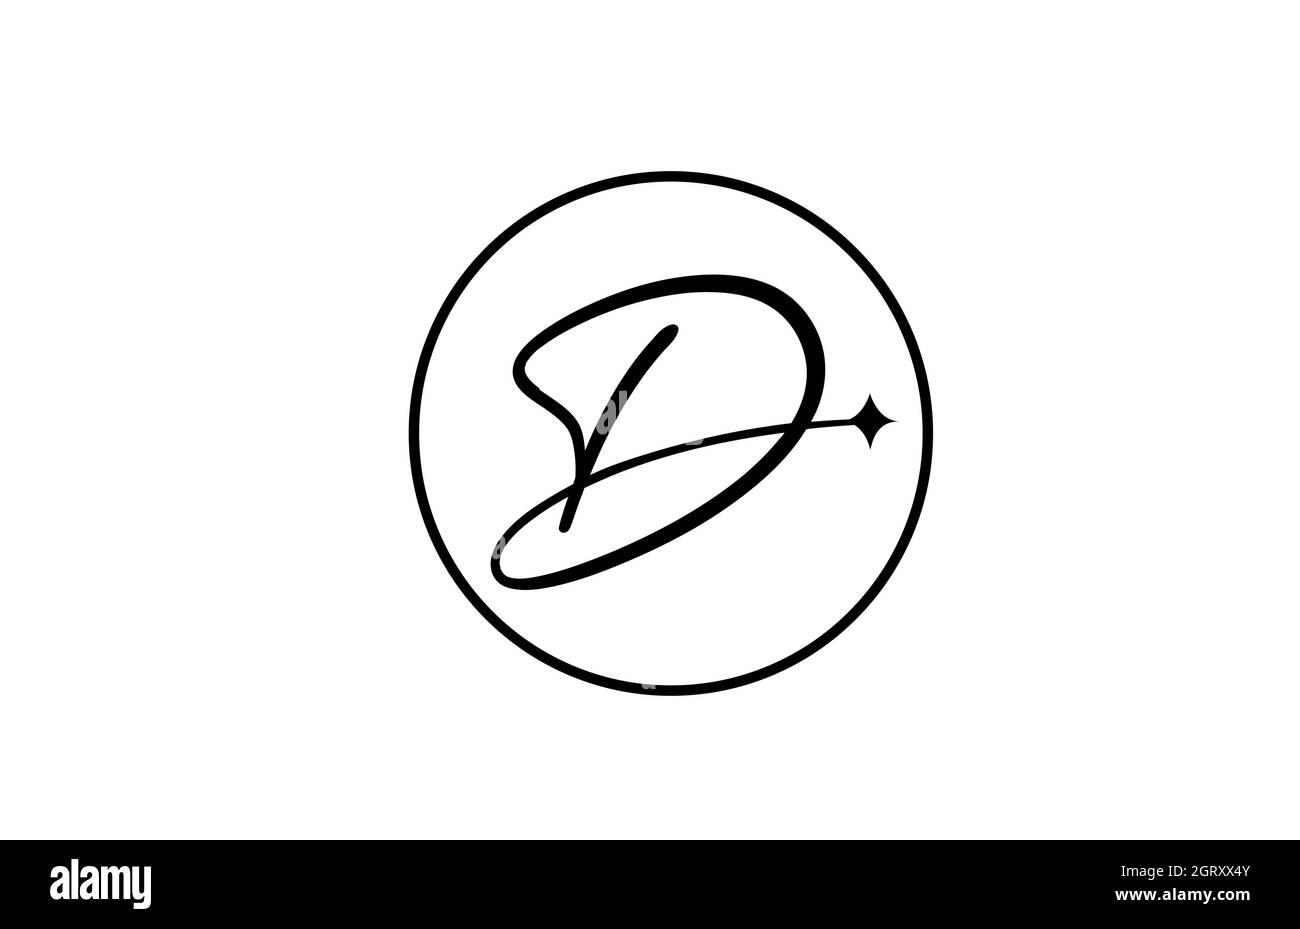 Logo lettera D alfabeto per aziende con stella e cerchio. Lettere semplici ed eleganti per l'azienda. Logo di identità aziendale icona di branding in bianco e nero Illustrazione Vettoriale